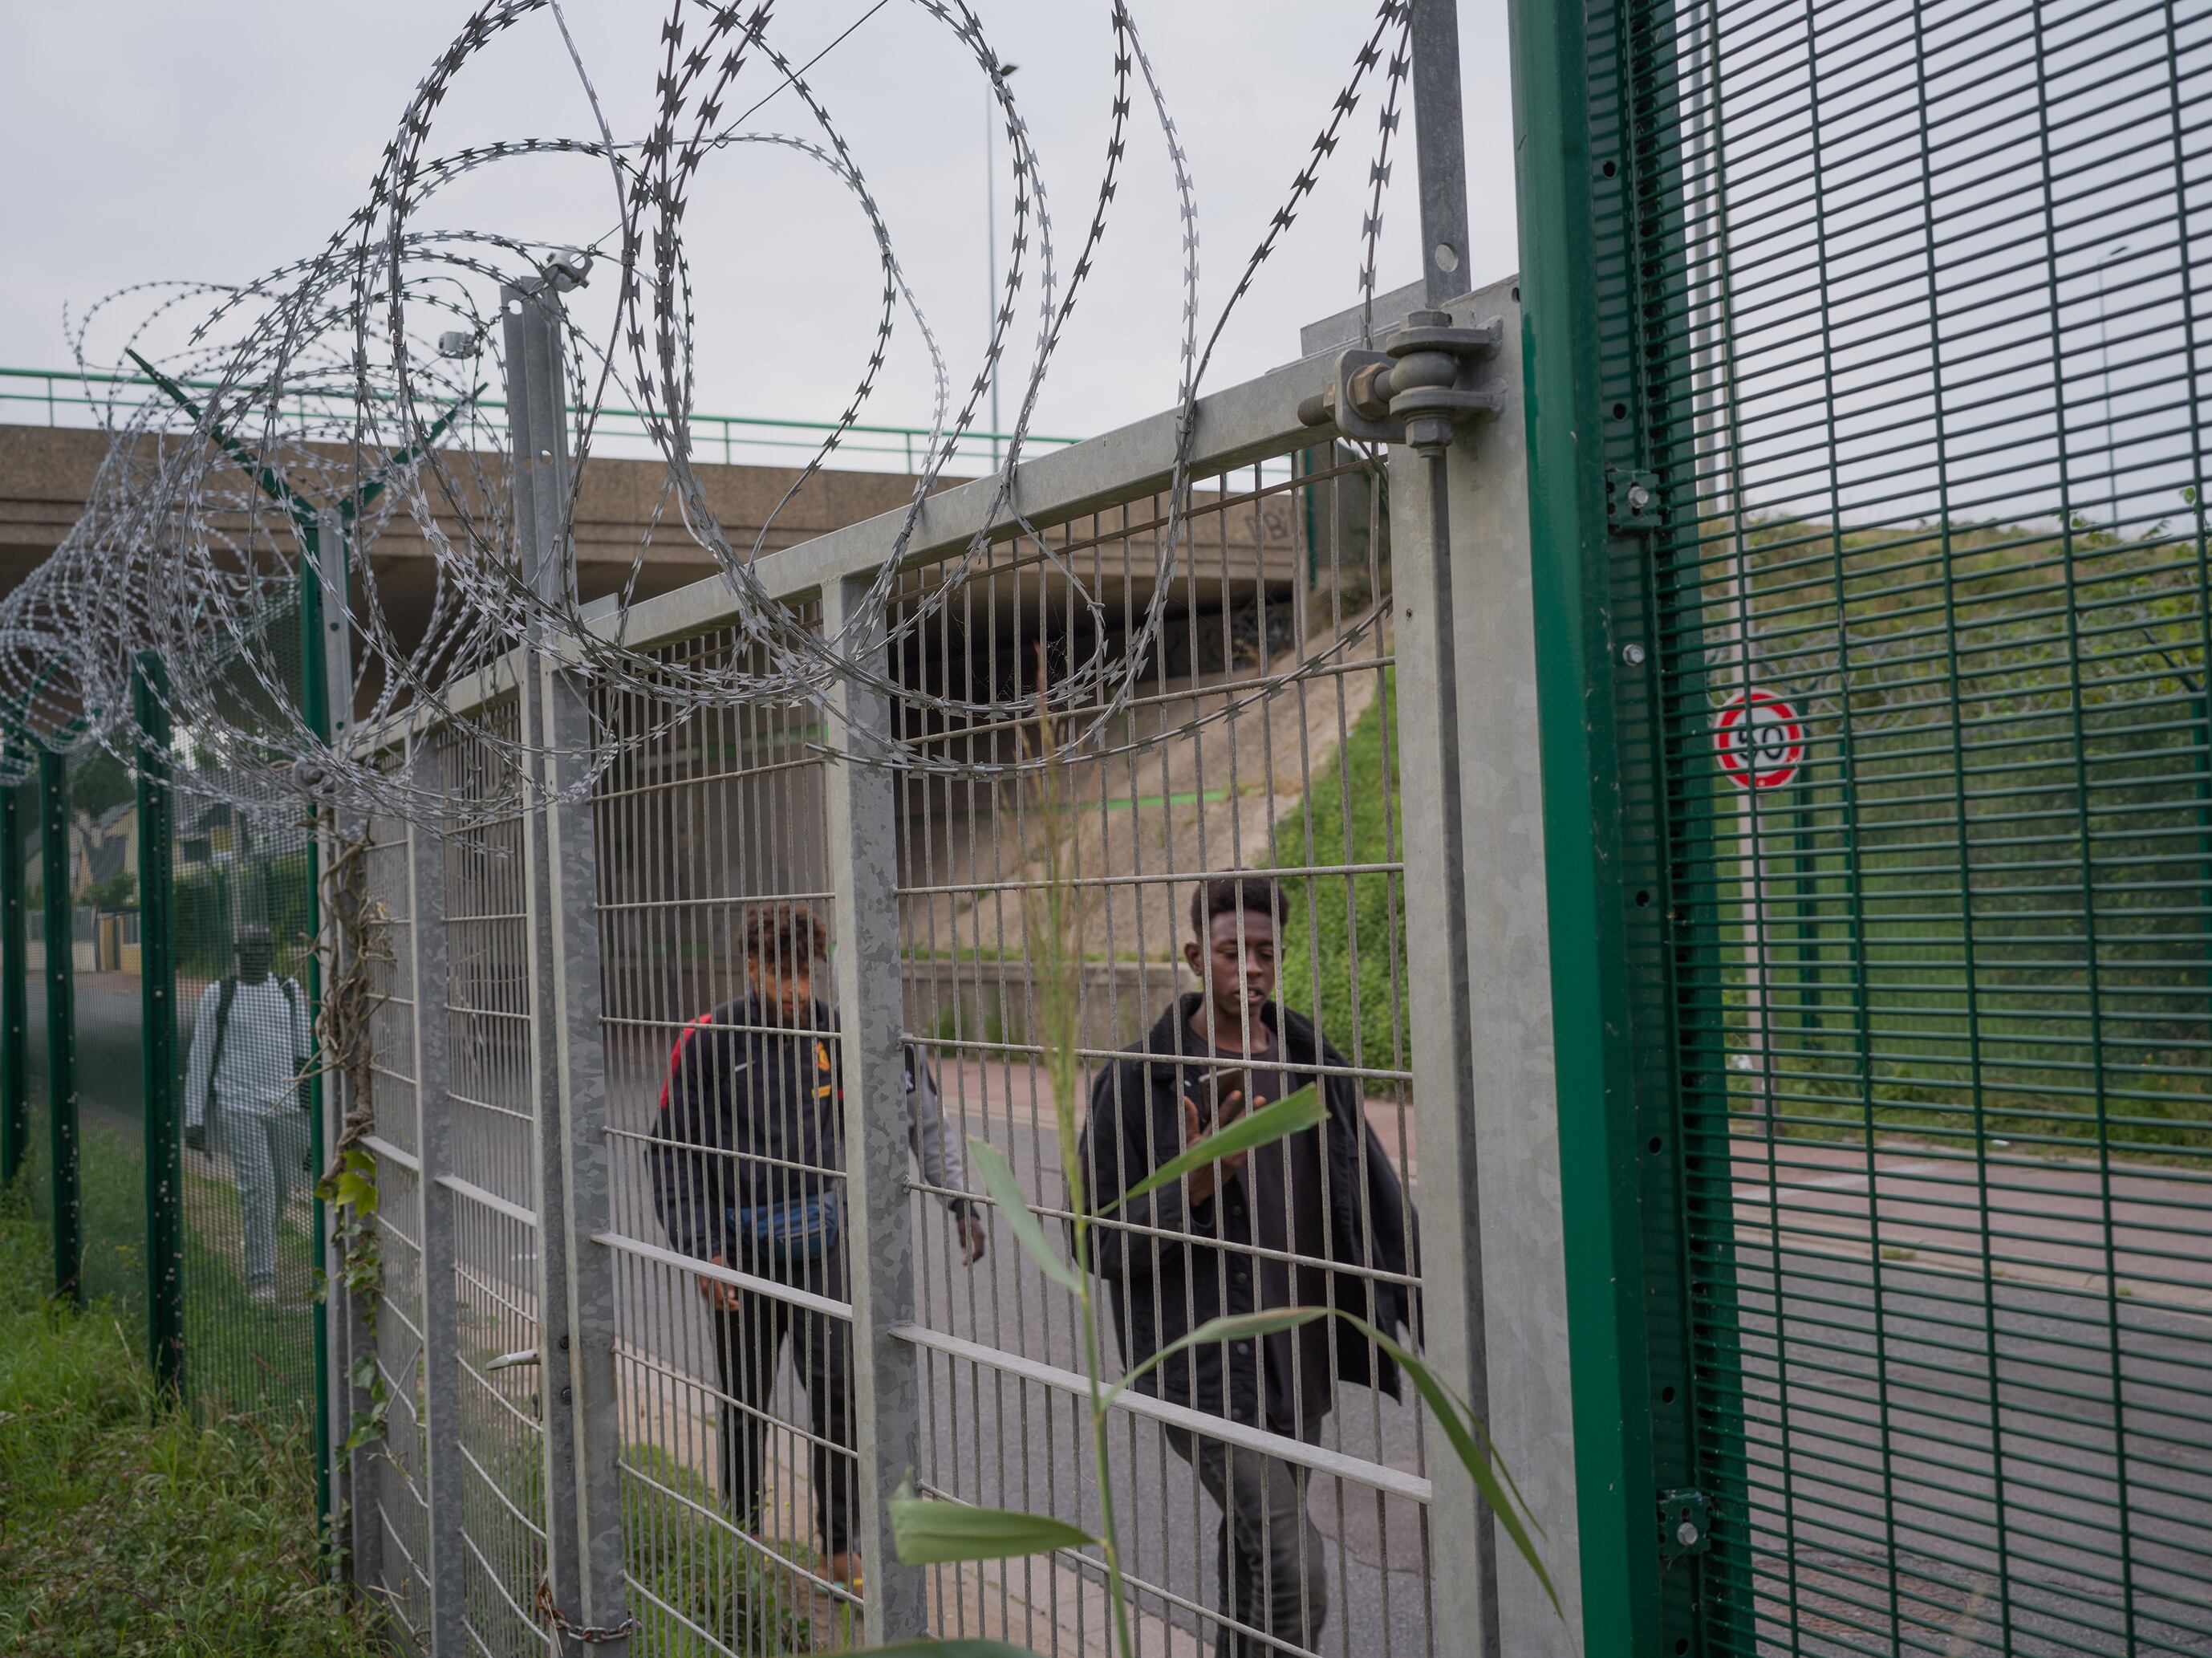 Un grupo de inmigrantes caminan junto a las alambradas que rodean las zonas portuarias en Calais.